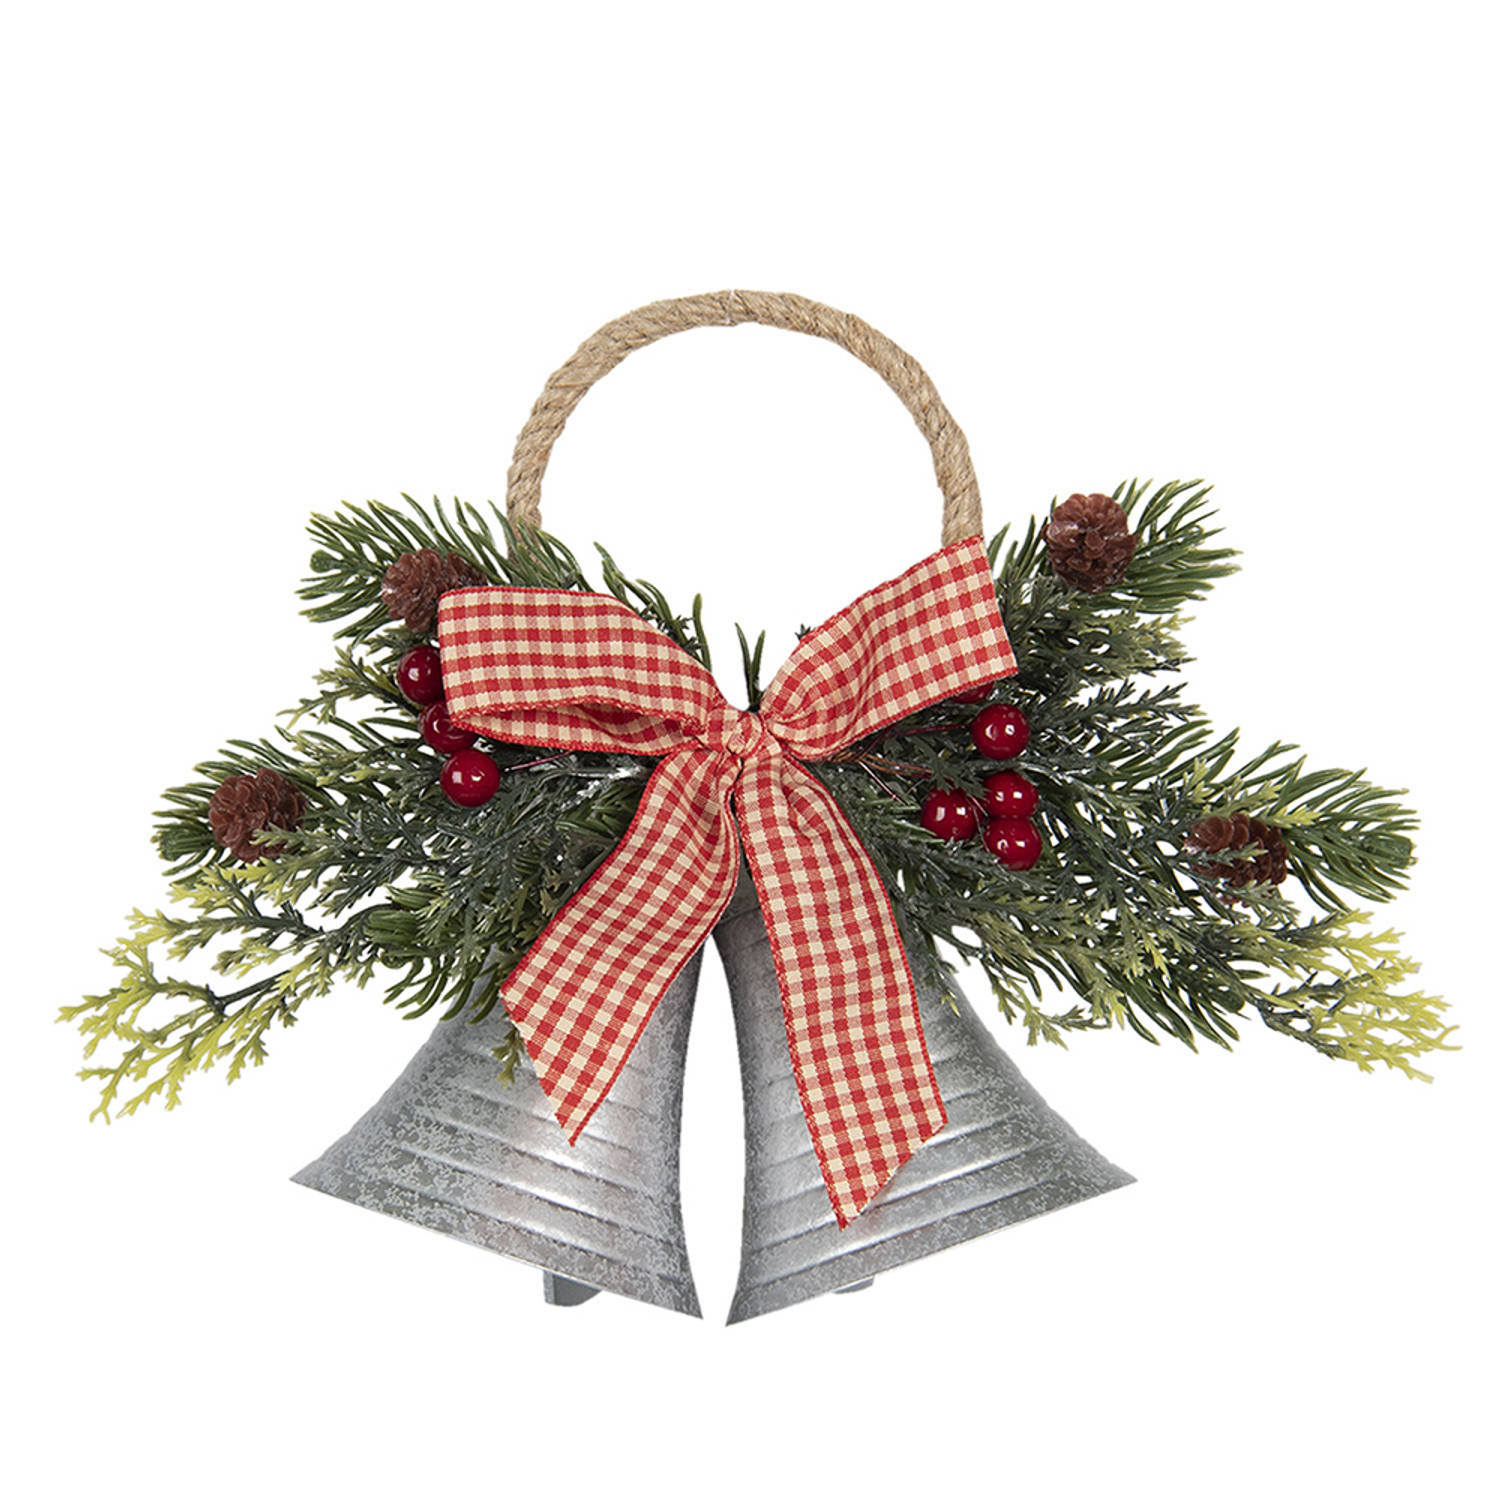 HAES DECO - Kersthanger Bellen - Formaat 23x8x18 cm - Kleur Rood - Materiaal Metaal - Kerstversiering, Kerstdecoratie, Decoratie Hanger, Kerstboomversiering